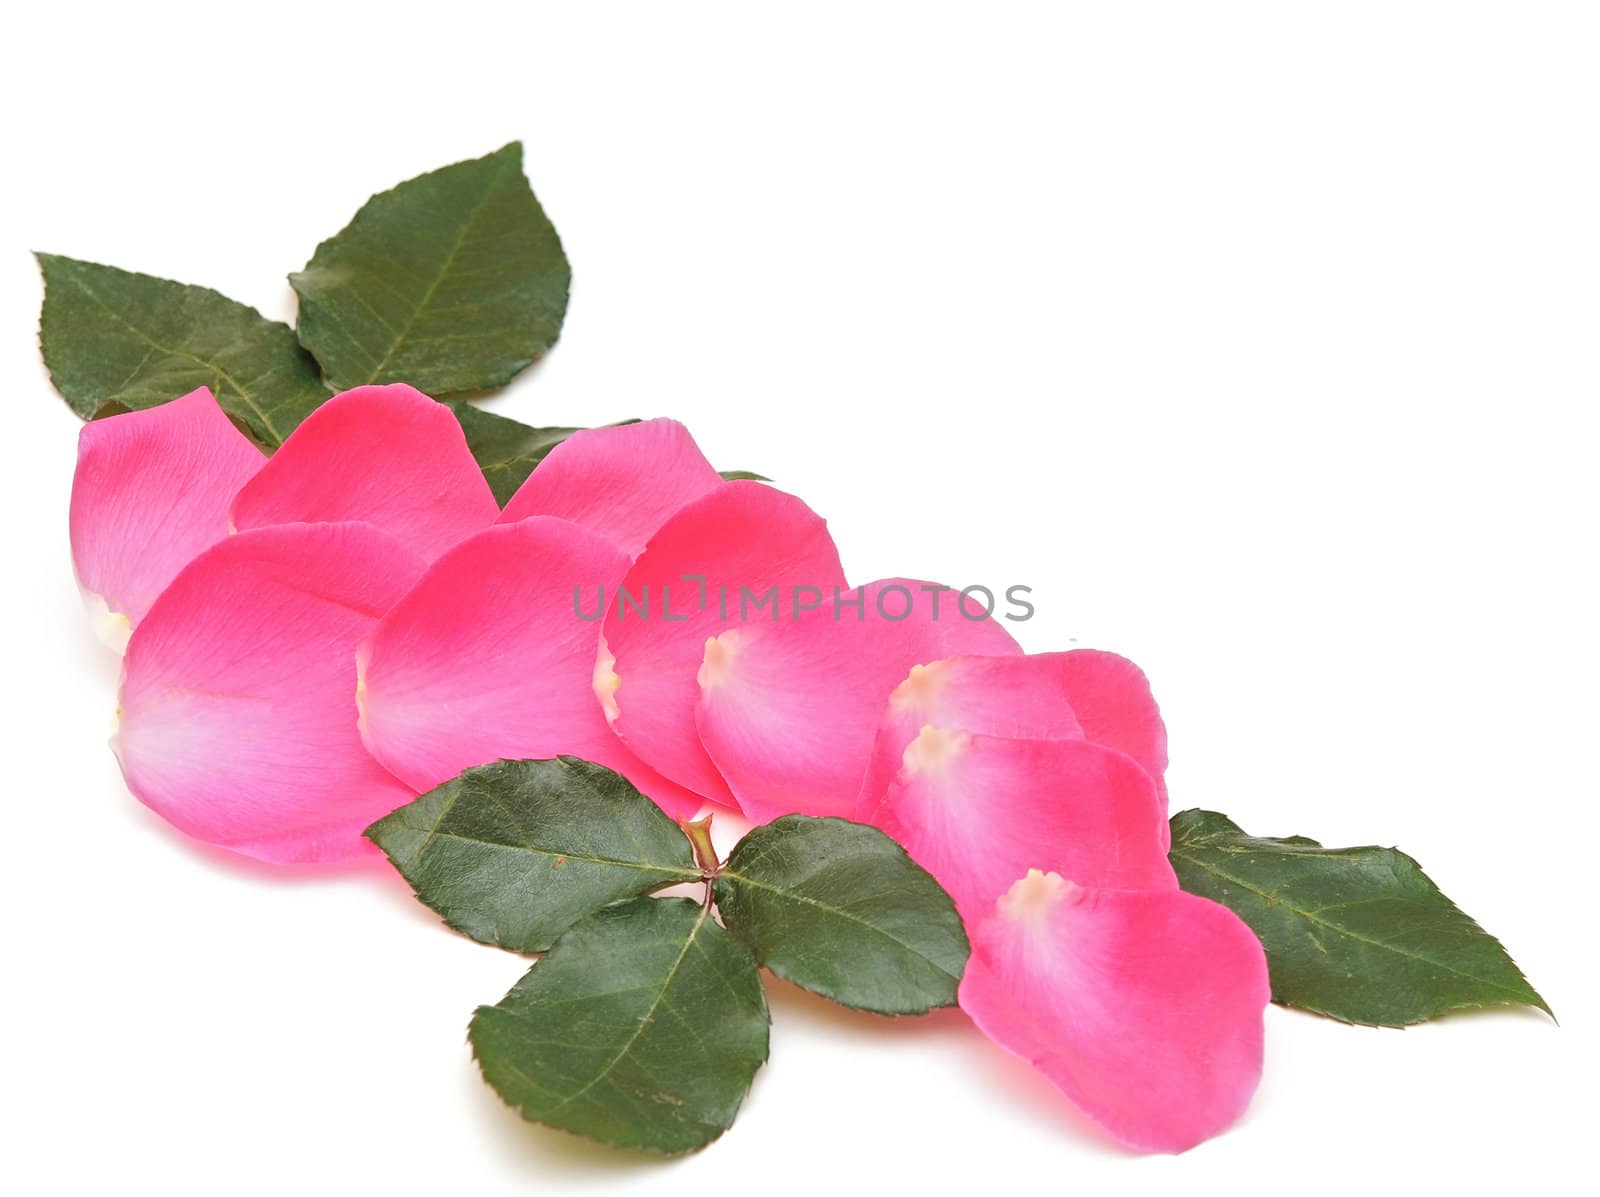 Petals of pink roses